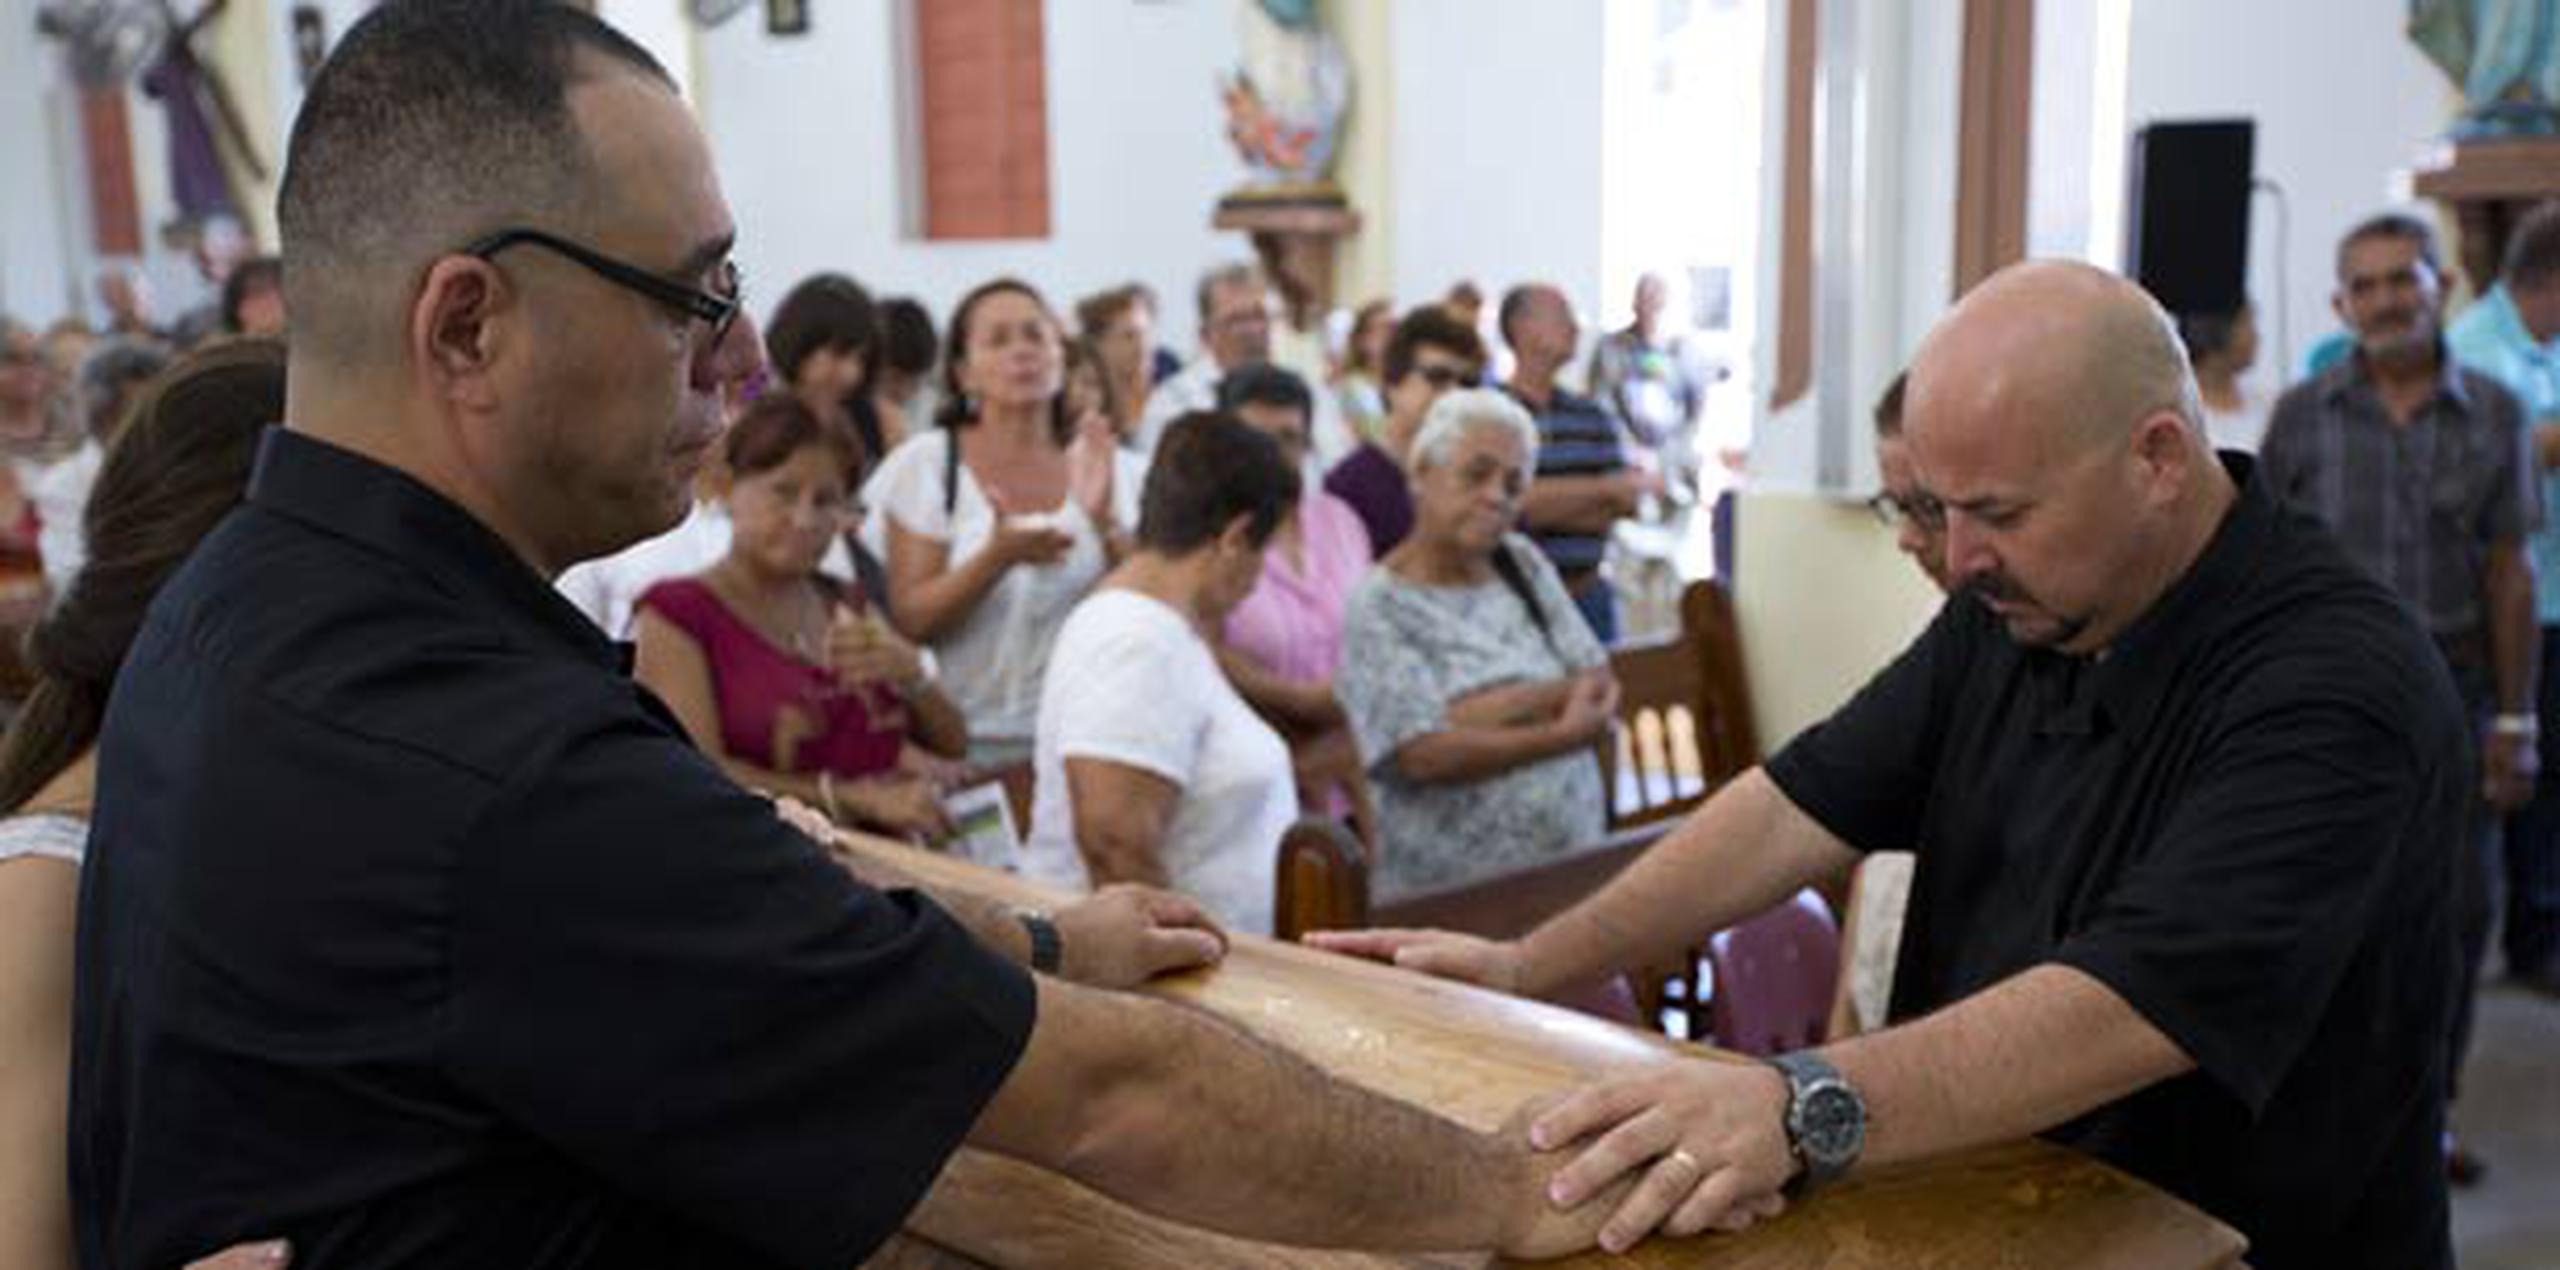 La misa ofrecida por el Padre German Valverde conmocionó a los hijos de la mujer y demás presentes. (jorge.ramirez@gfrmedia.com)